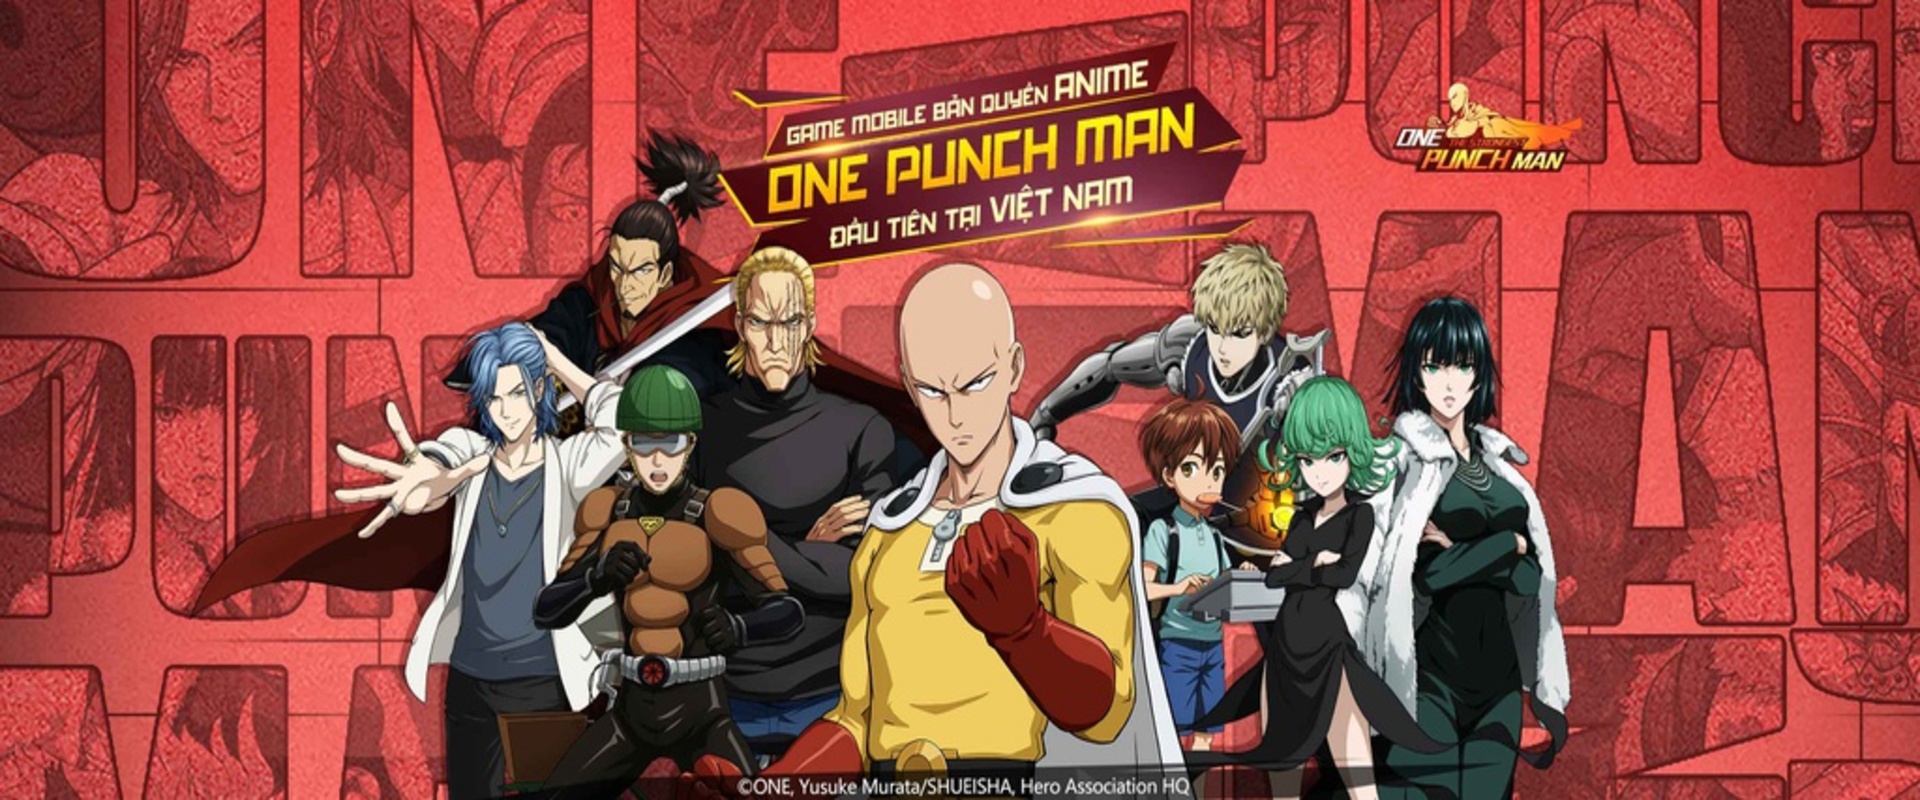 Hình ảnh One Punch Man đẹp nhất  Ảnh Anime One Punch